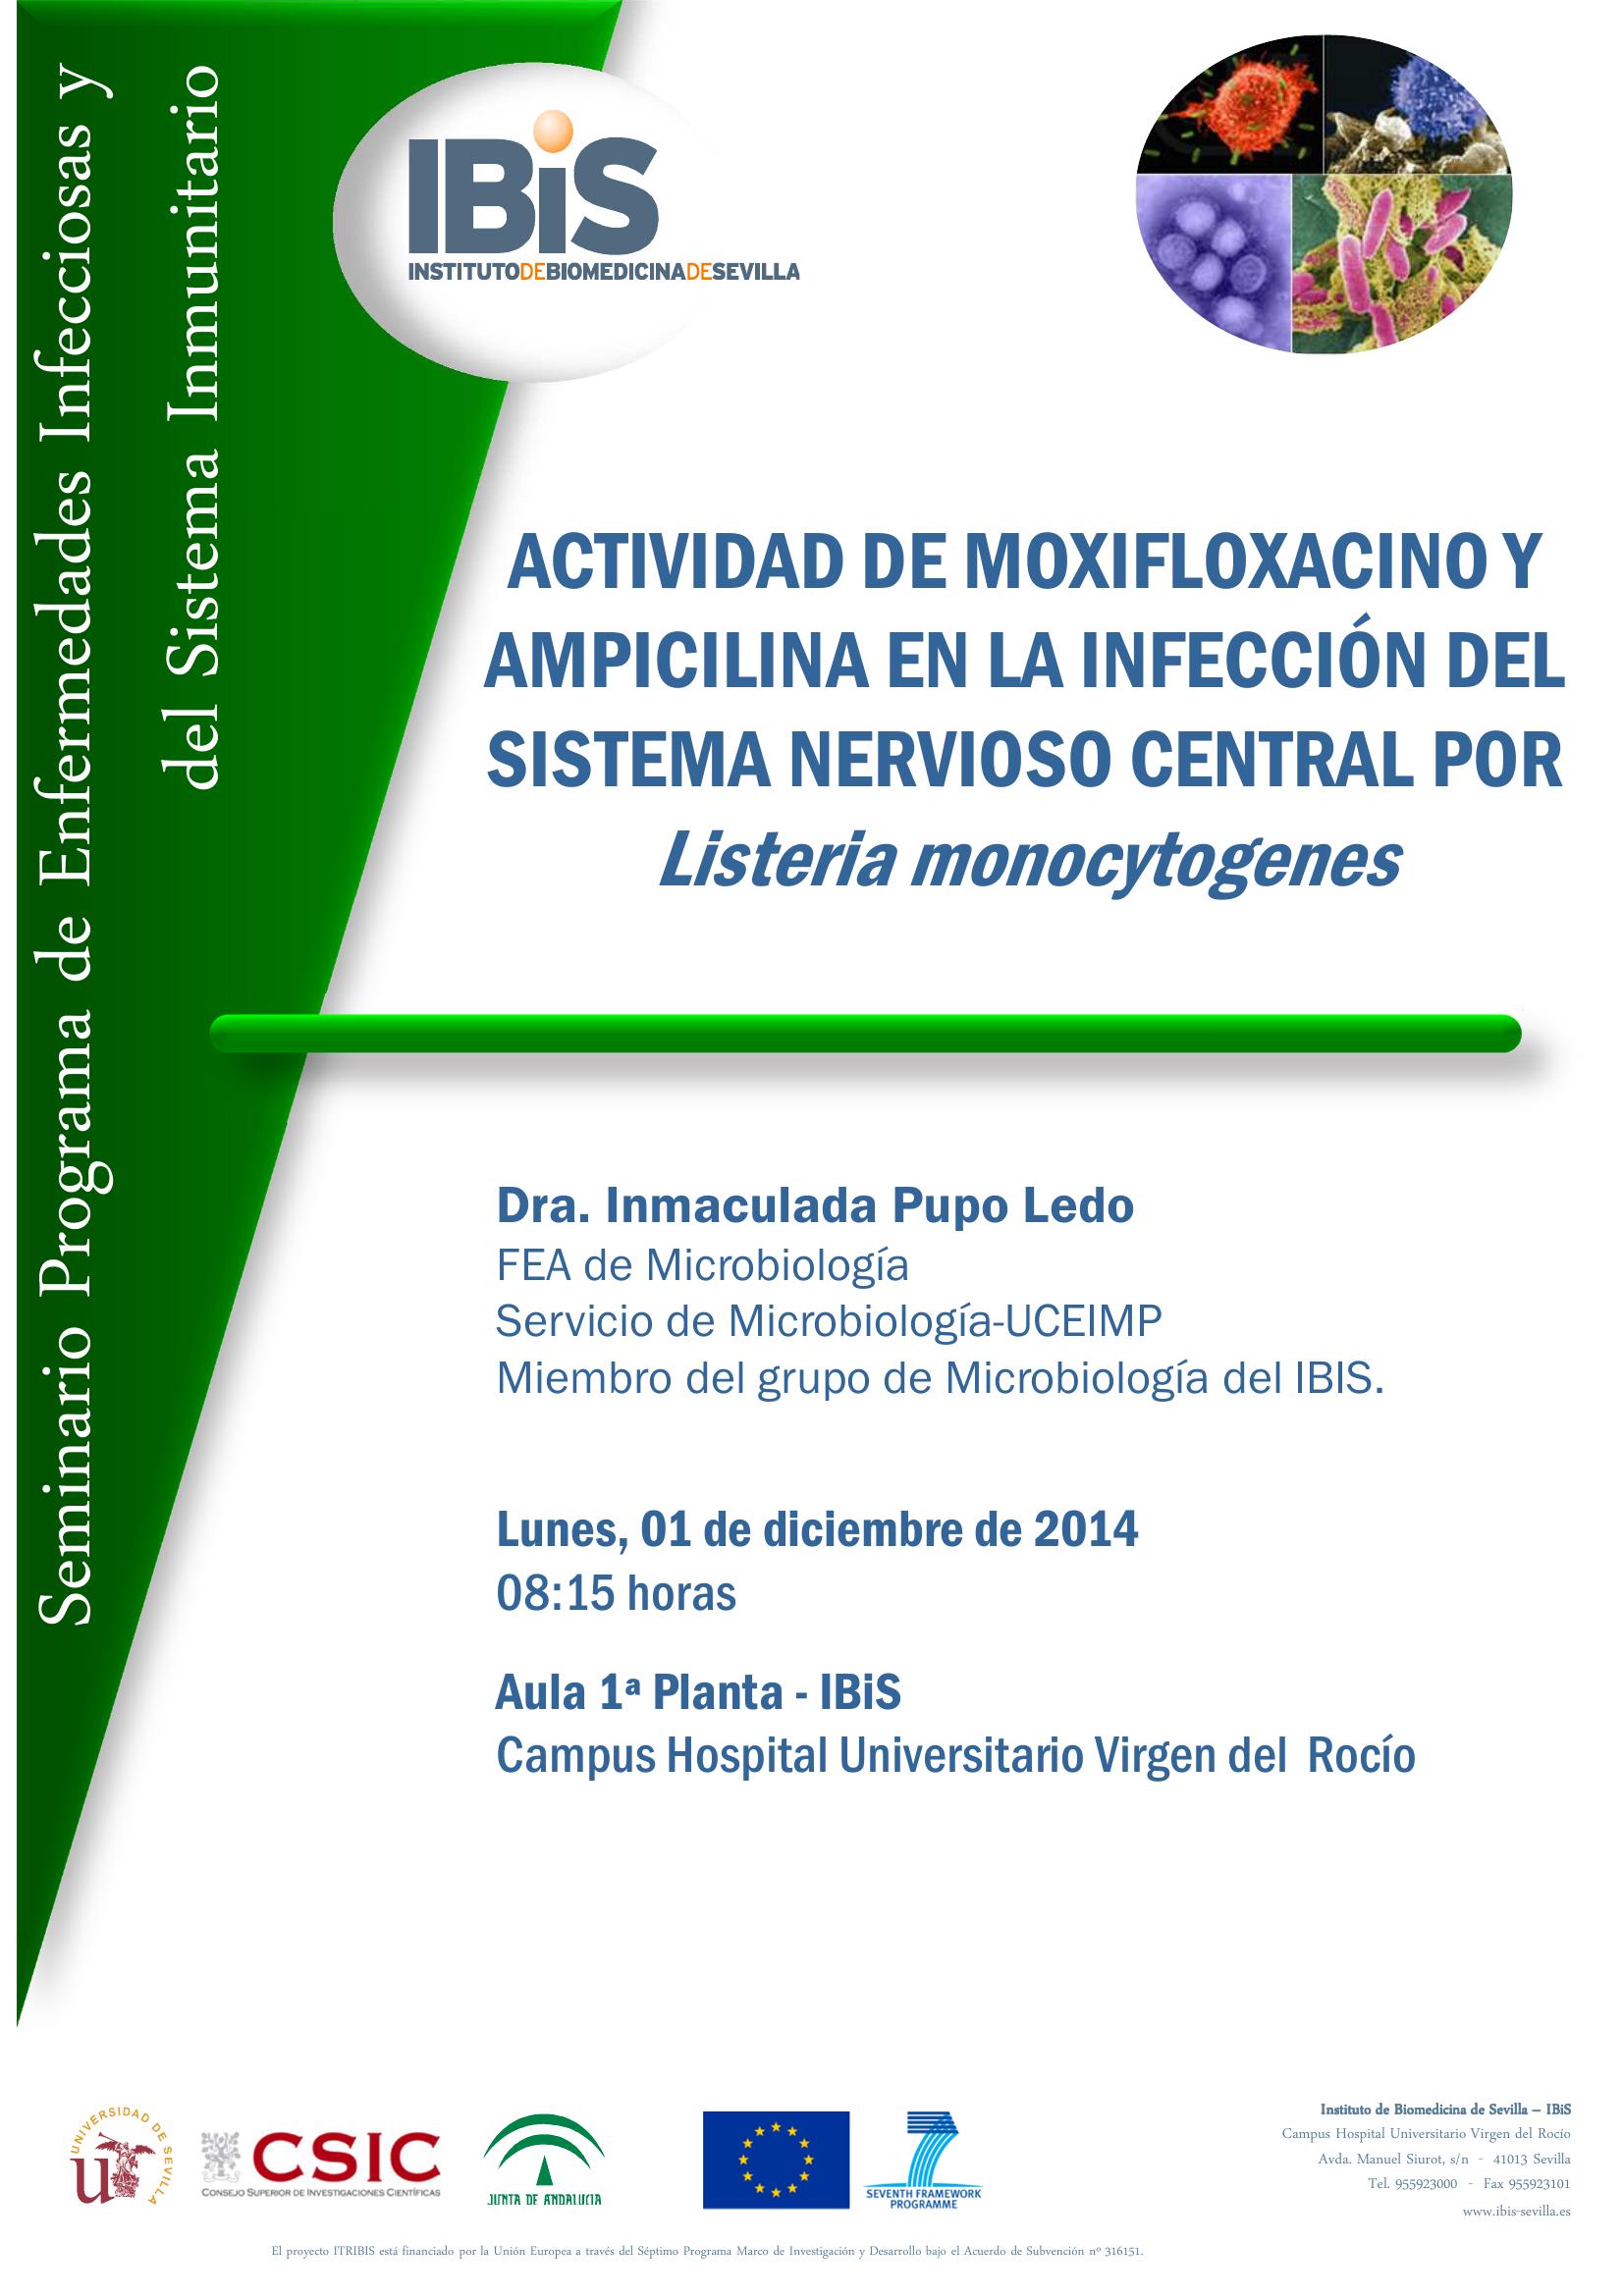 Poster: ACTIVIDAD DE MOXIFLOXACINO Y AMPICILINA EN LA INFECCIÓN DEL SISTEMA NERVIOSO CENTRAL POR Listeria monocytogenes